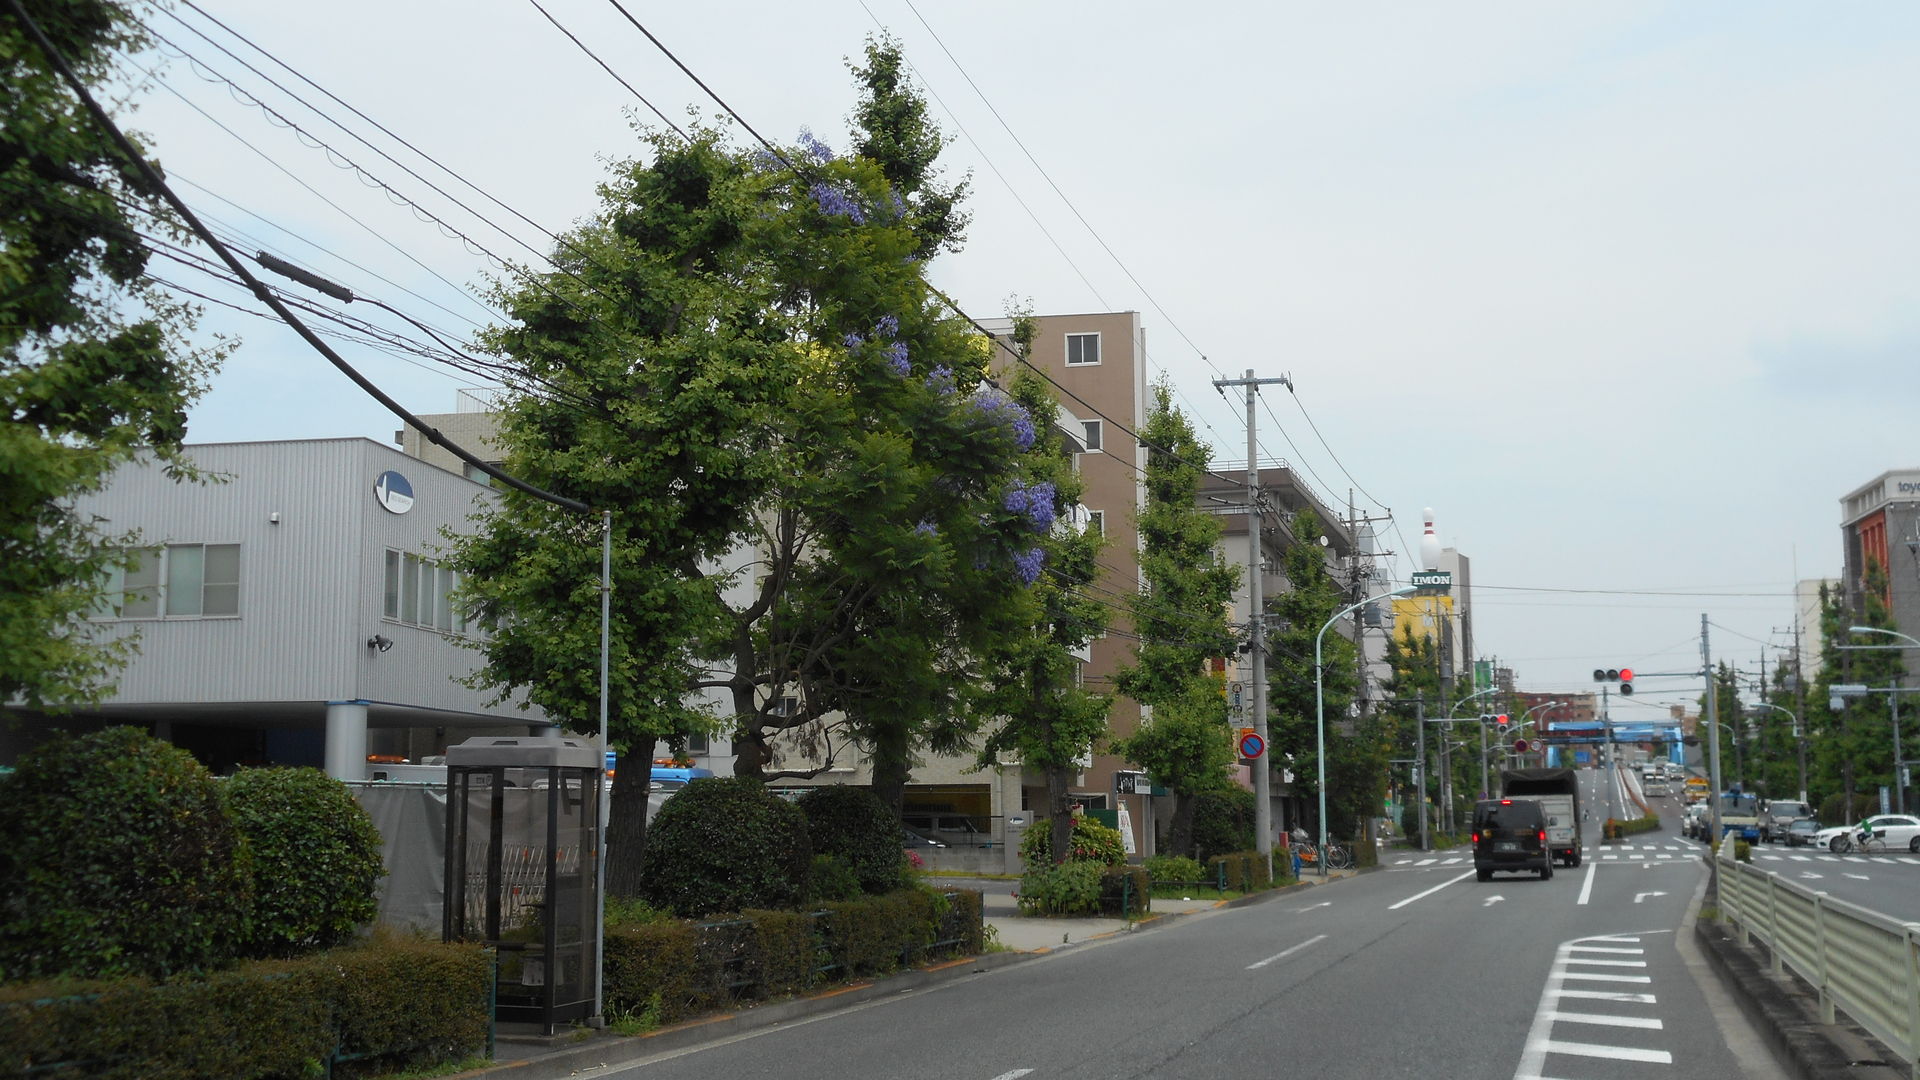 ジャカランダ 蒲田 大田区 15 6 11 かまくら Kamakura 鎌倉 ｔａka２ 鎌倉歩いて 935 9km 鎌倉の季節の花を中心に鎌倉の旬を紹介ています